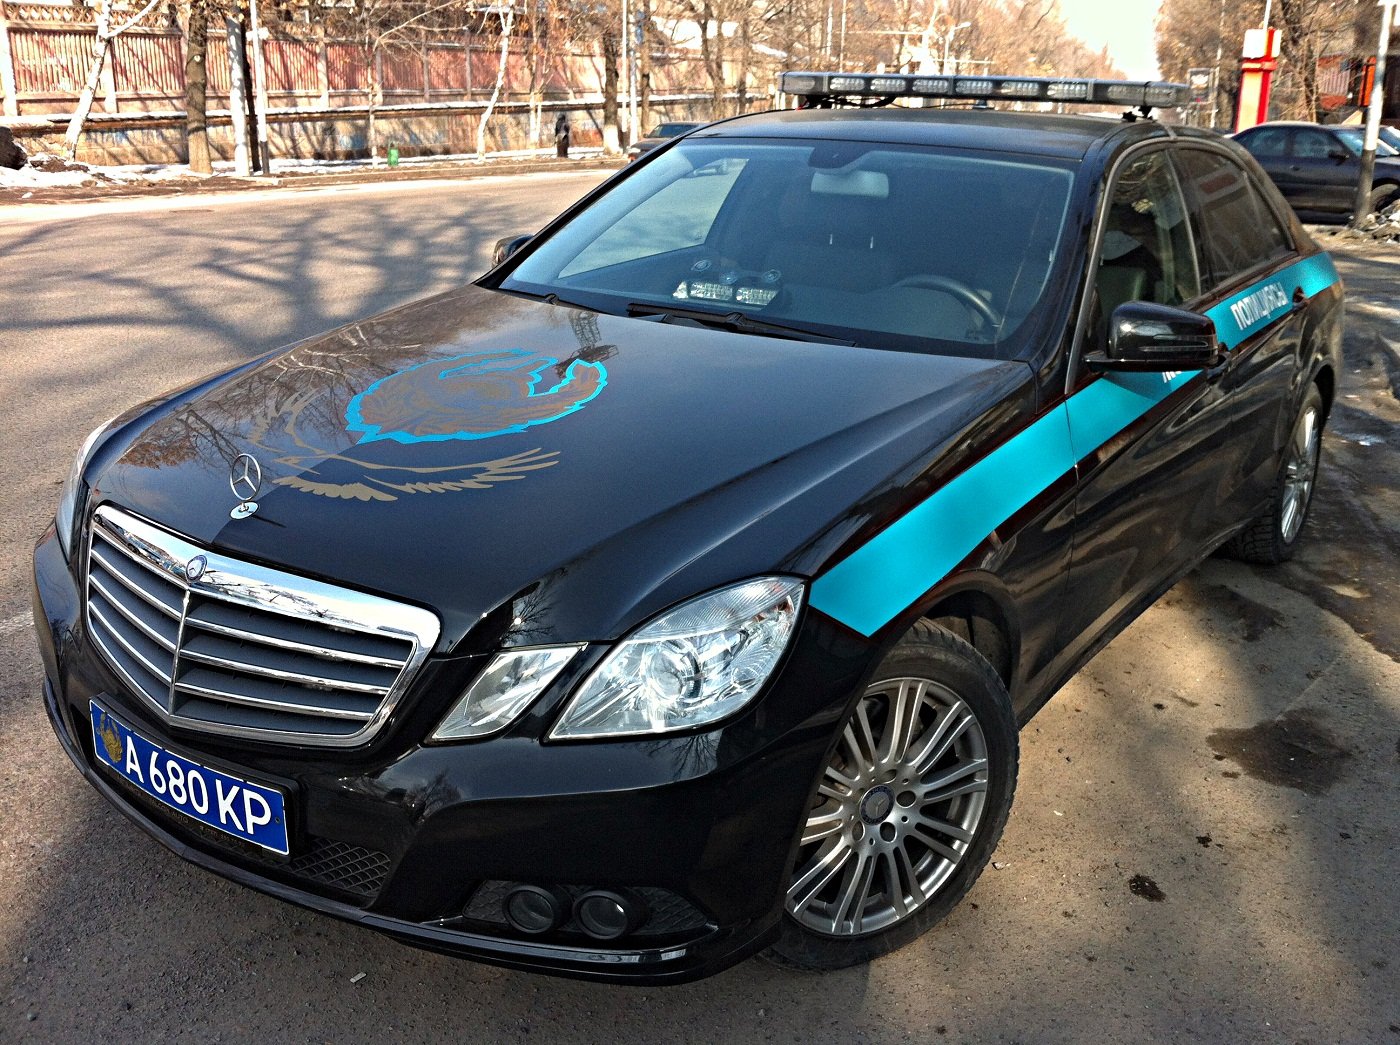 Купить авто кз. Казахстанские машины. Казахстанские полицейские машины. Казахская полиция машины. Крутые машины Казахстана.